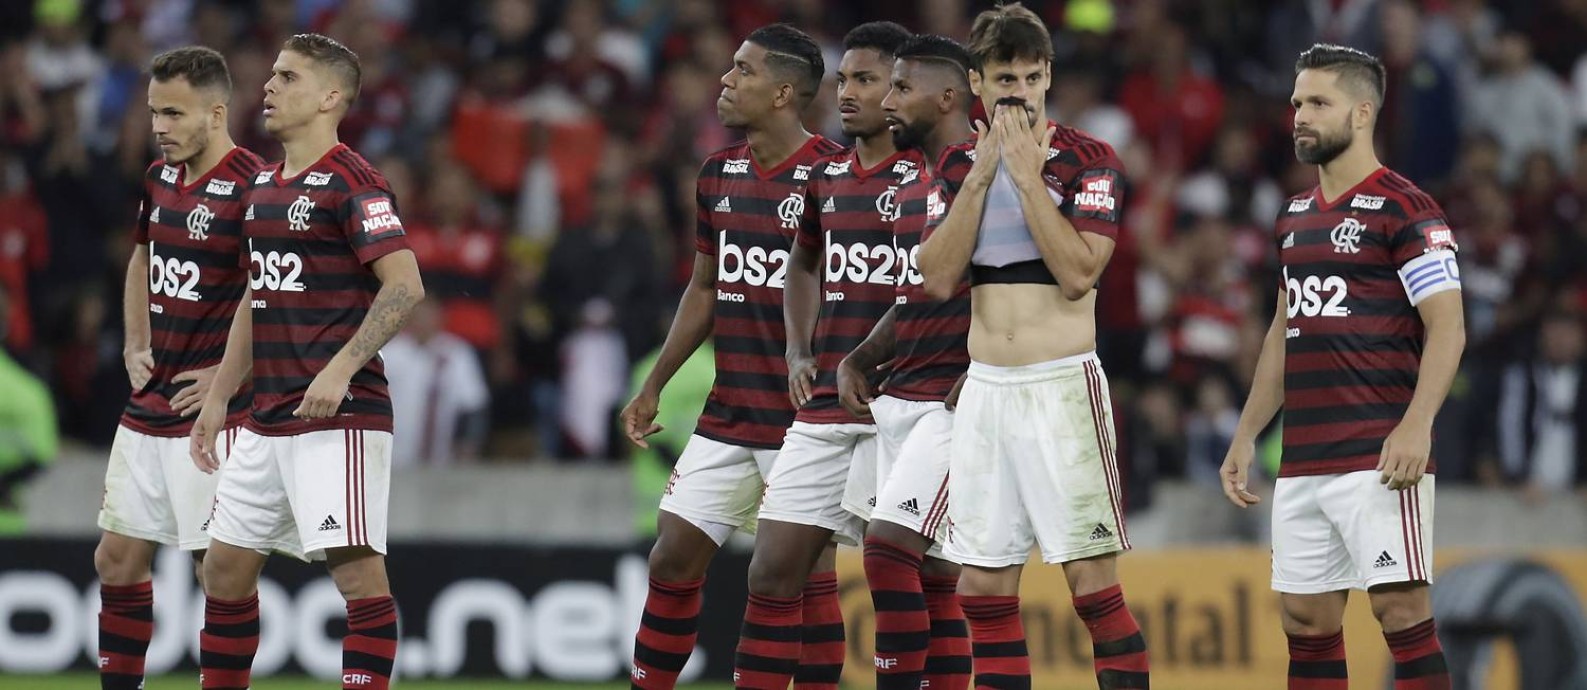 Jogadores do Flamengo pareciam não acreditar com a derrota nos pênaltis Foto: MARCELO THEOBALD / Agência O Globo